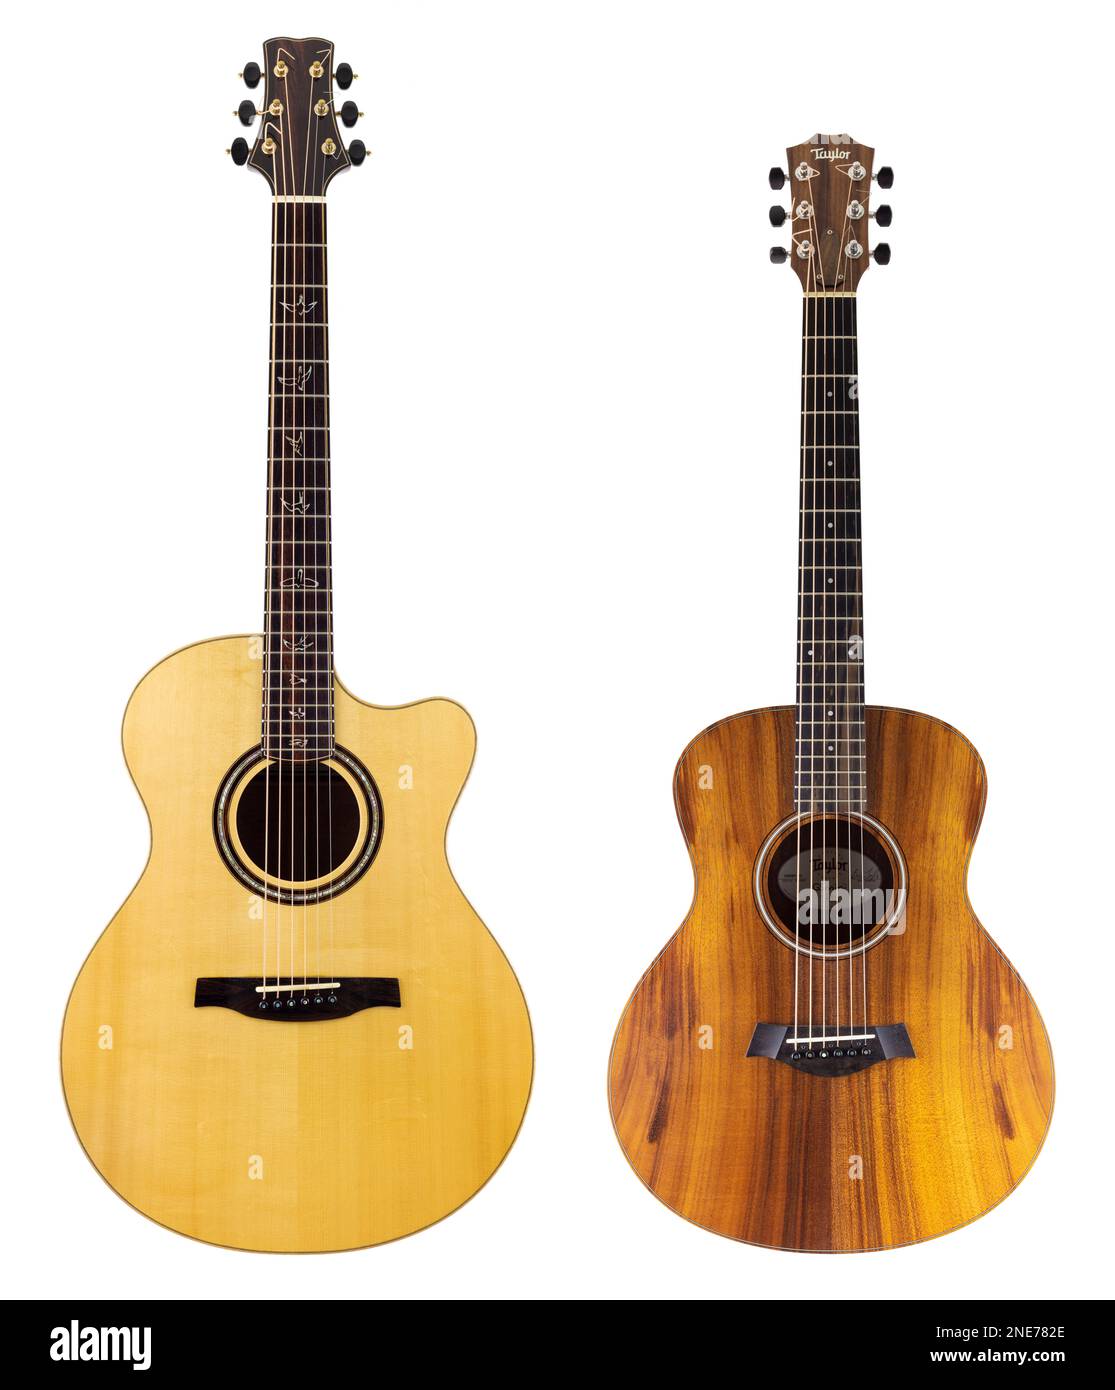 Gitarren zwei Gitarren zwei Akustikgitarren schneiden Gitarren auf weißem Hintergrund aus PRS Angelus Akustikgitarre Taylor GS Mini Akustikgitarre zwei Gitarren 2 Stockfoto